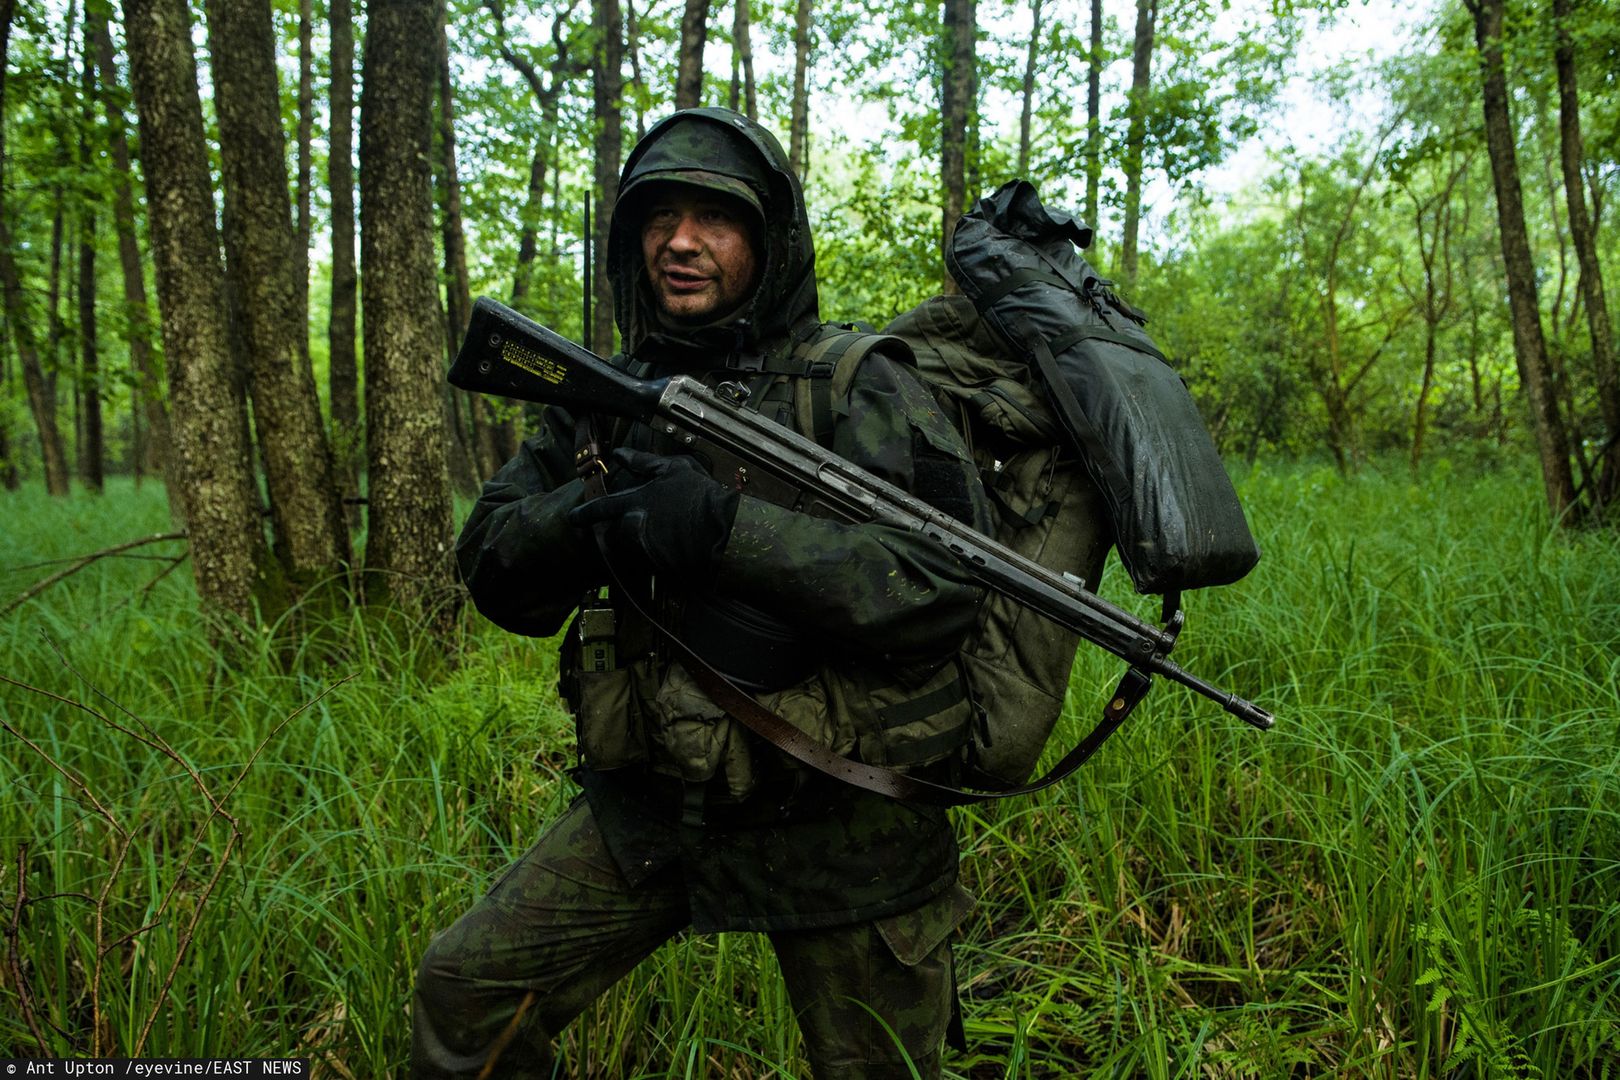 Litewscy żołnierze zakamuflowali się tak dobrze, że uznano ich za zaginionych